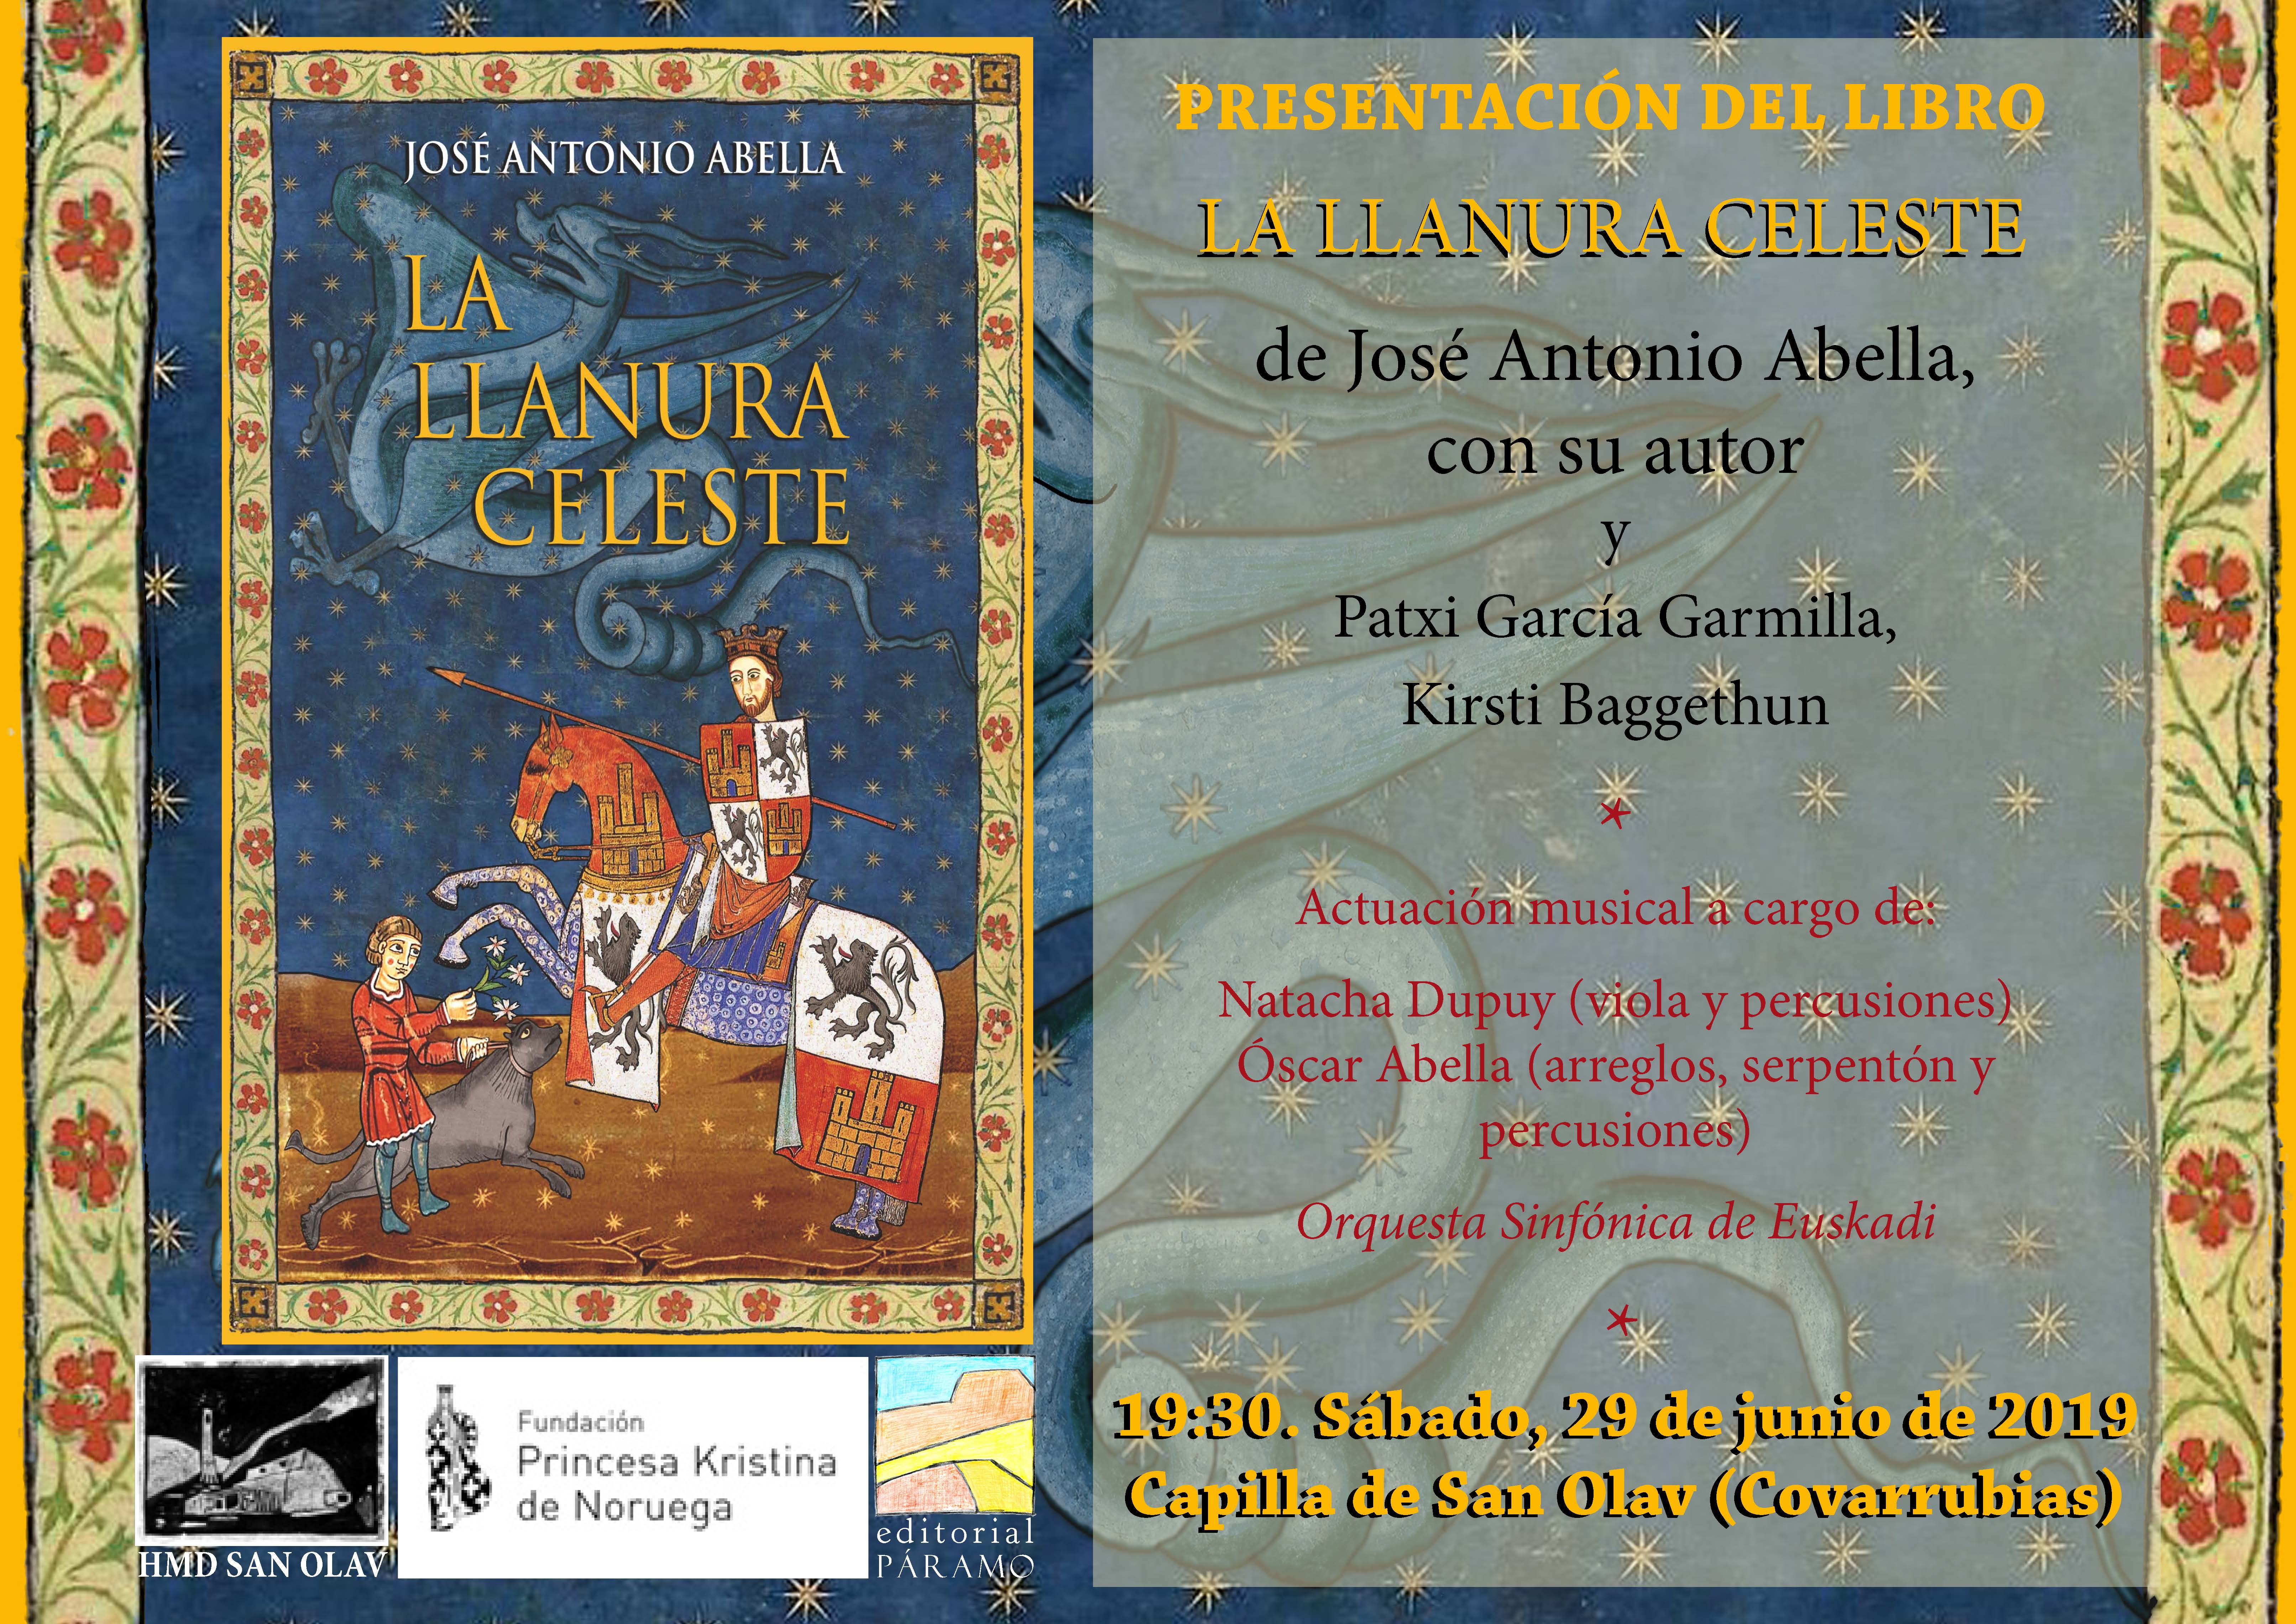 Presentación del libro “La Llanura Celeste” de José Antonio Abella en la Capilla de San Olav